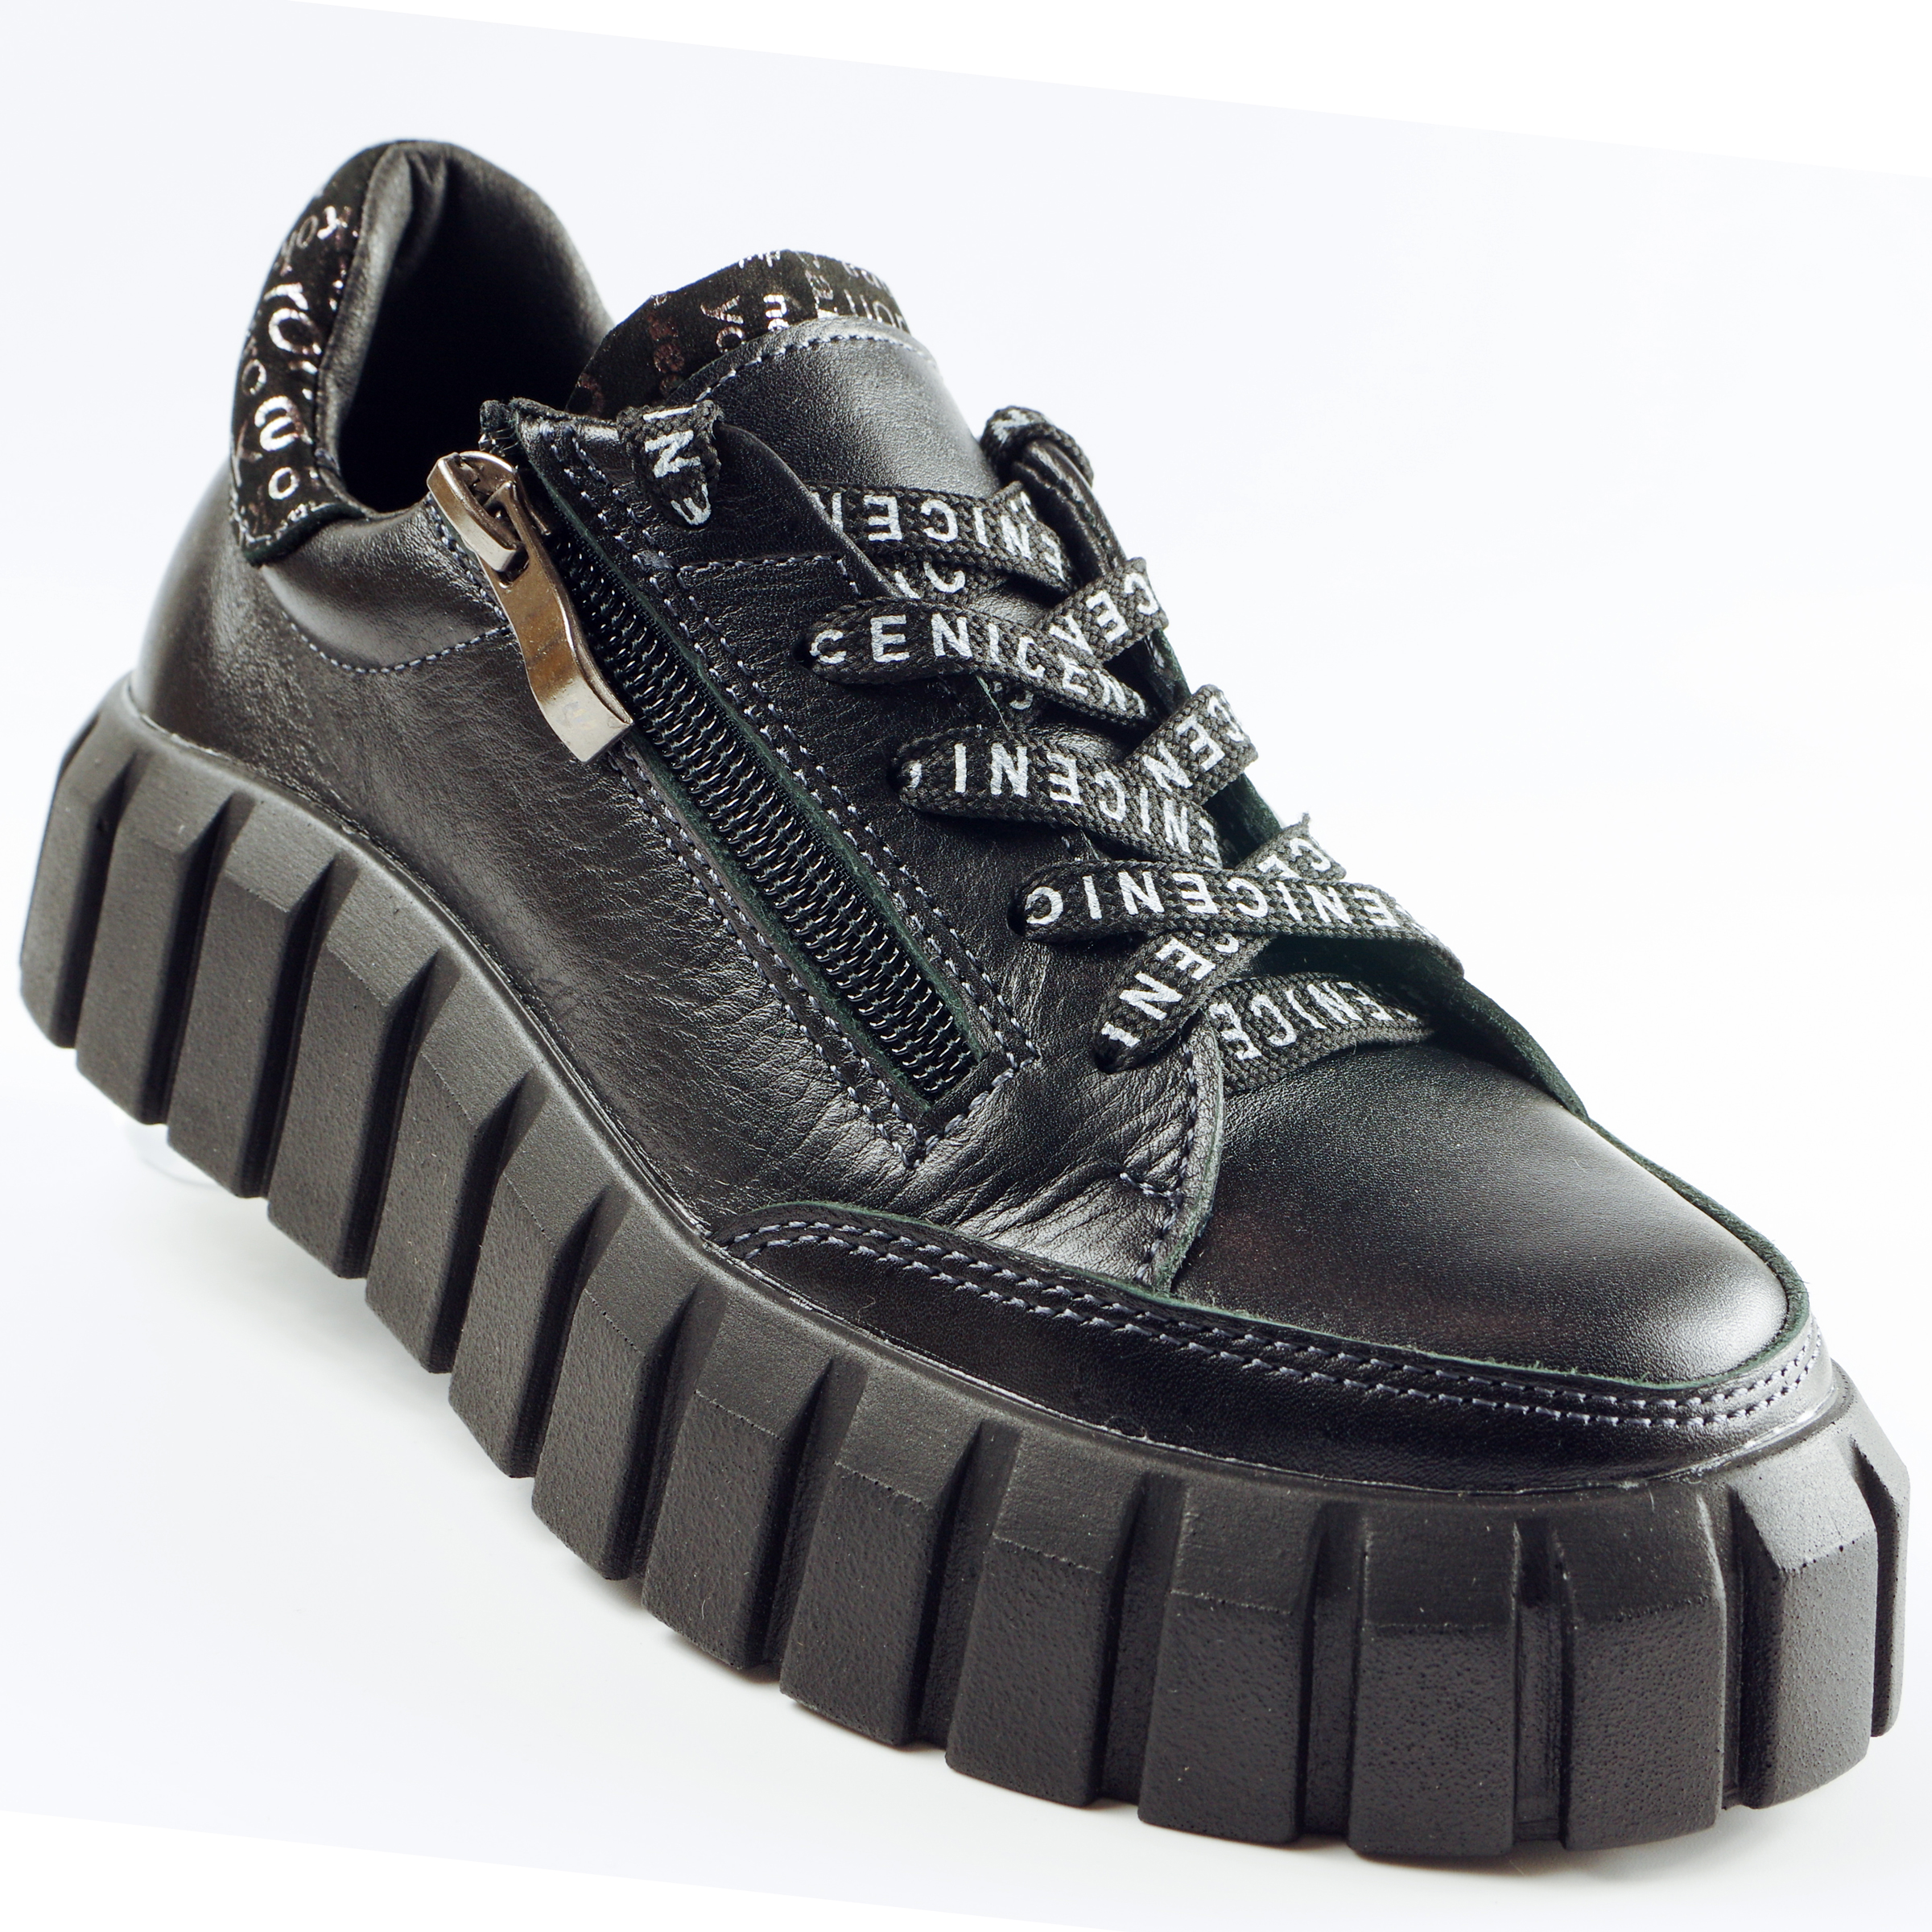 Туфлі дитячі (2117) для дівчинки, матеріал Натуральна шкіра, Чорний колір, 32-38 розміри – Sole Kids. Фото 1